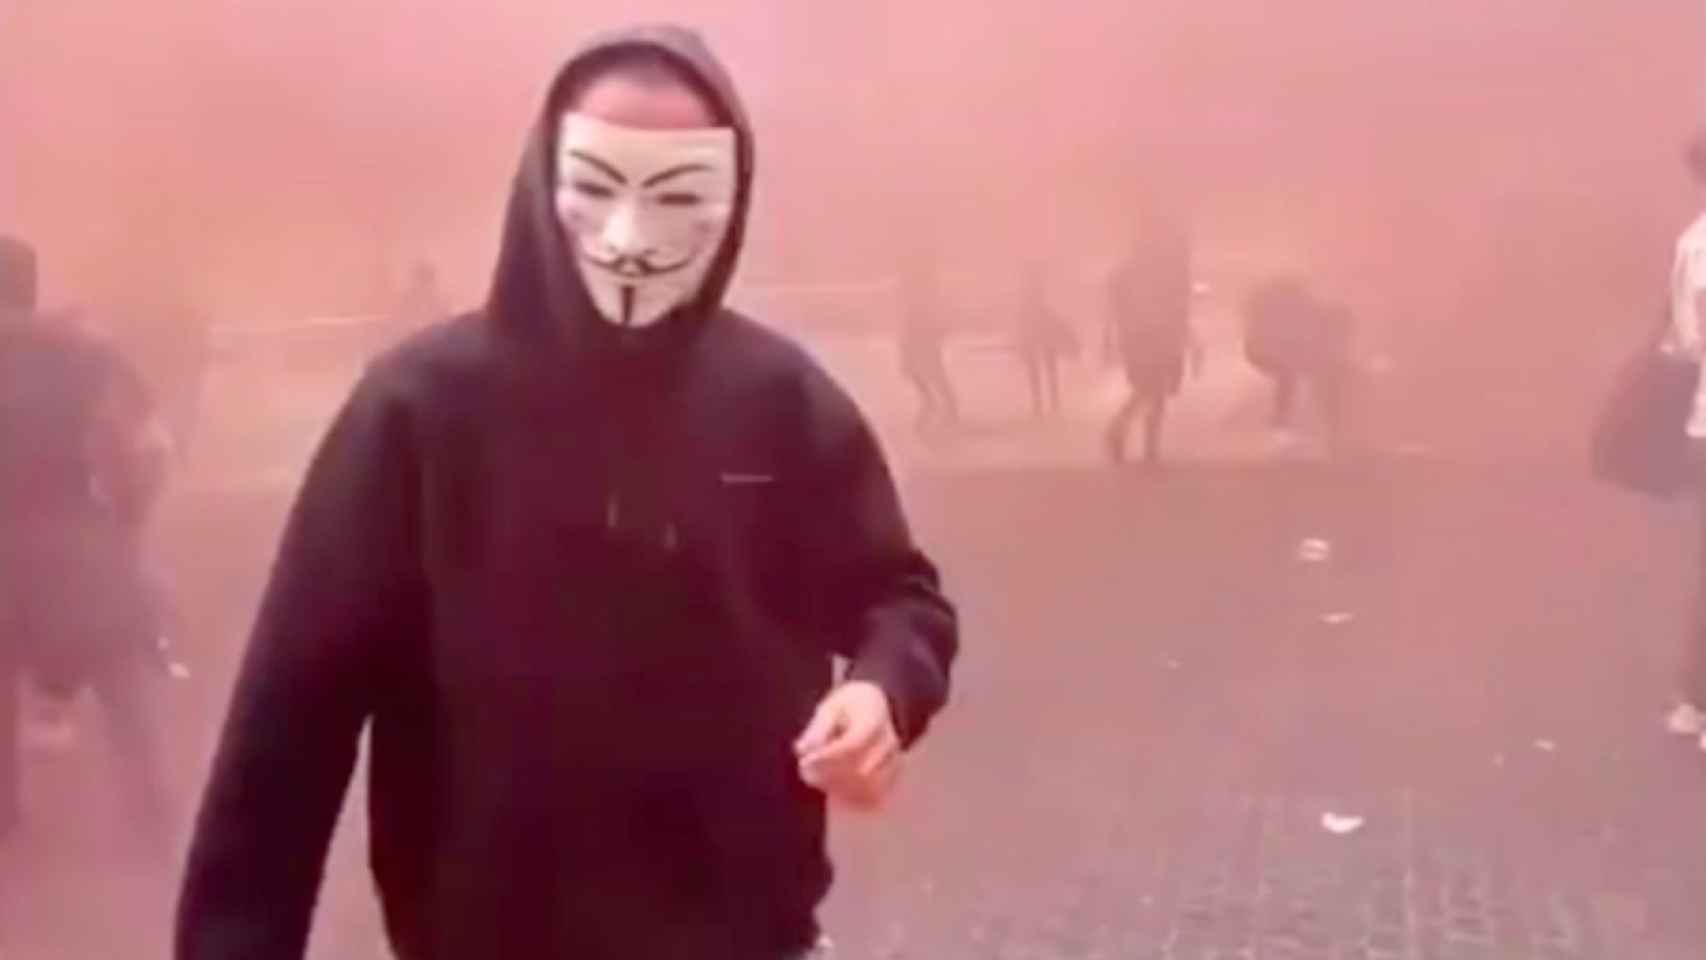 Captura de pantalla del vídeo en el que se ve a manifestantes con máscaras de Anonymus activando bombas de humo rojas y lanzando piedras en la plaza de Sant Jaume